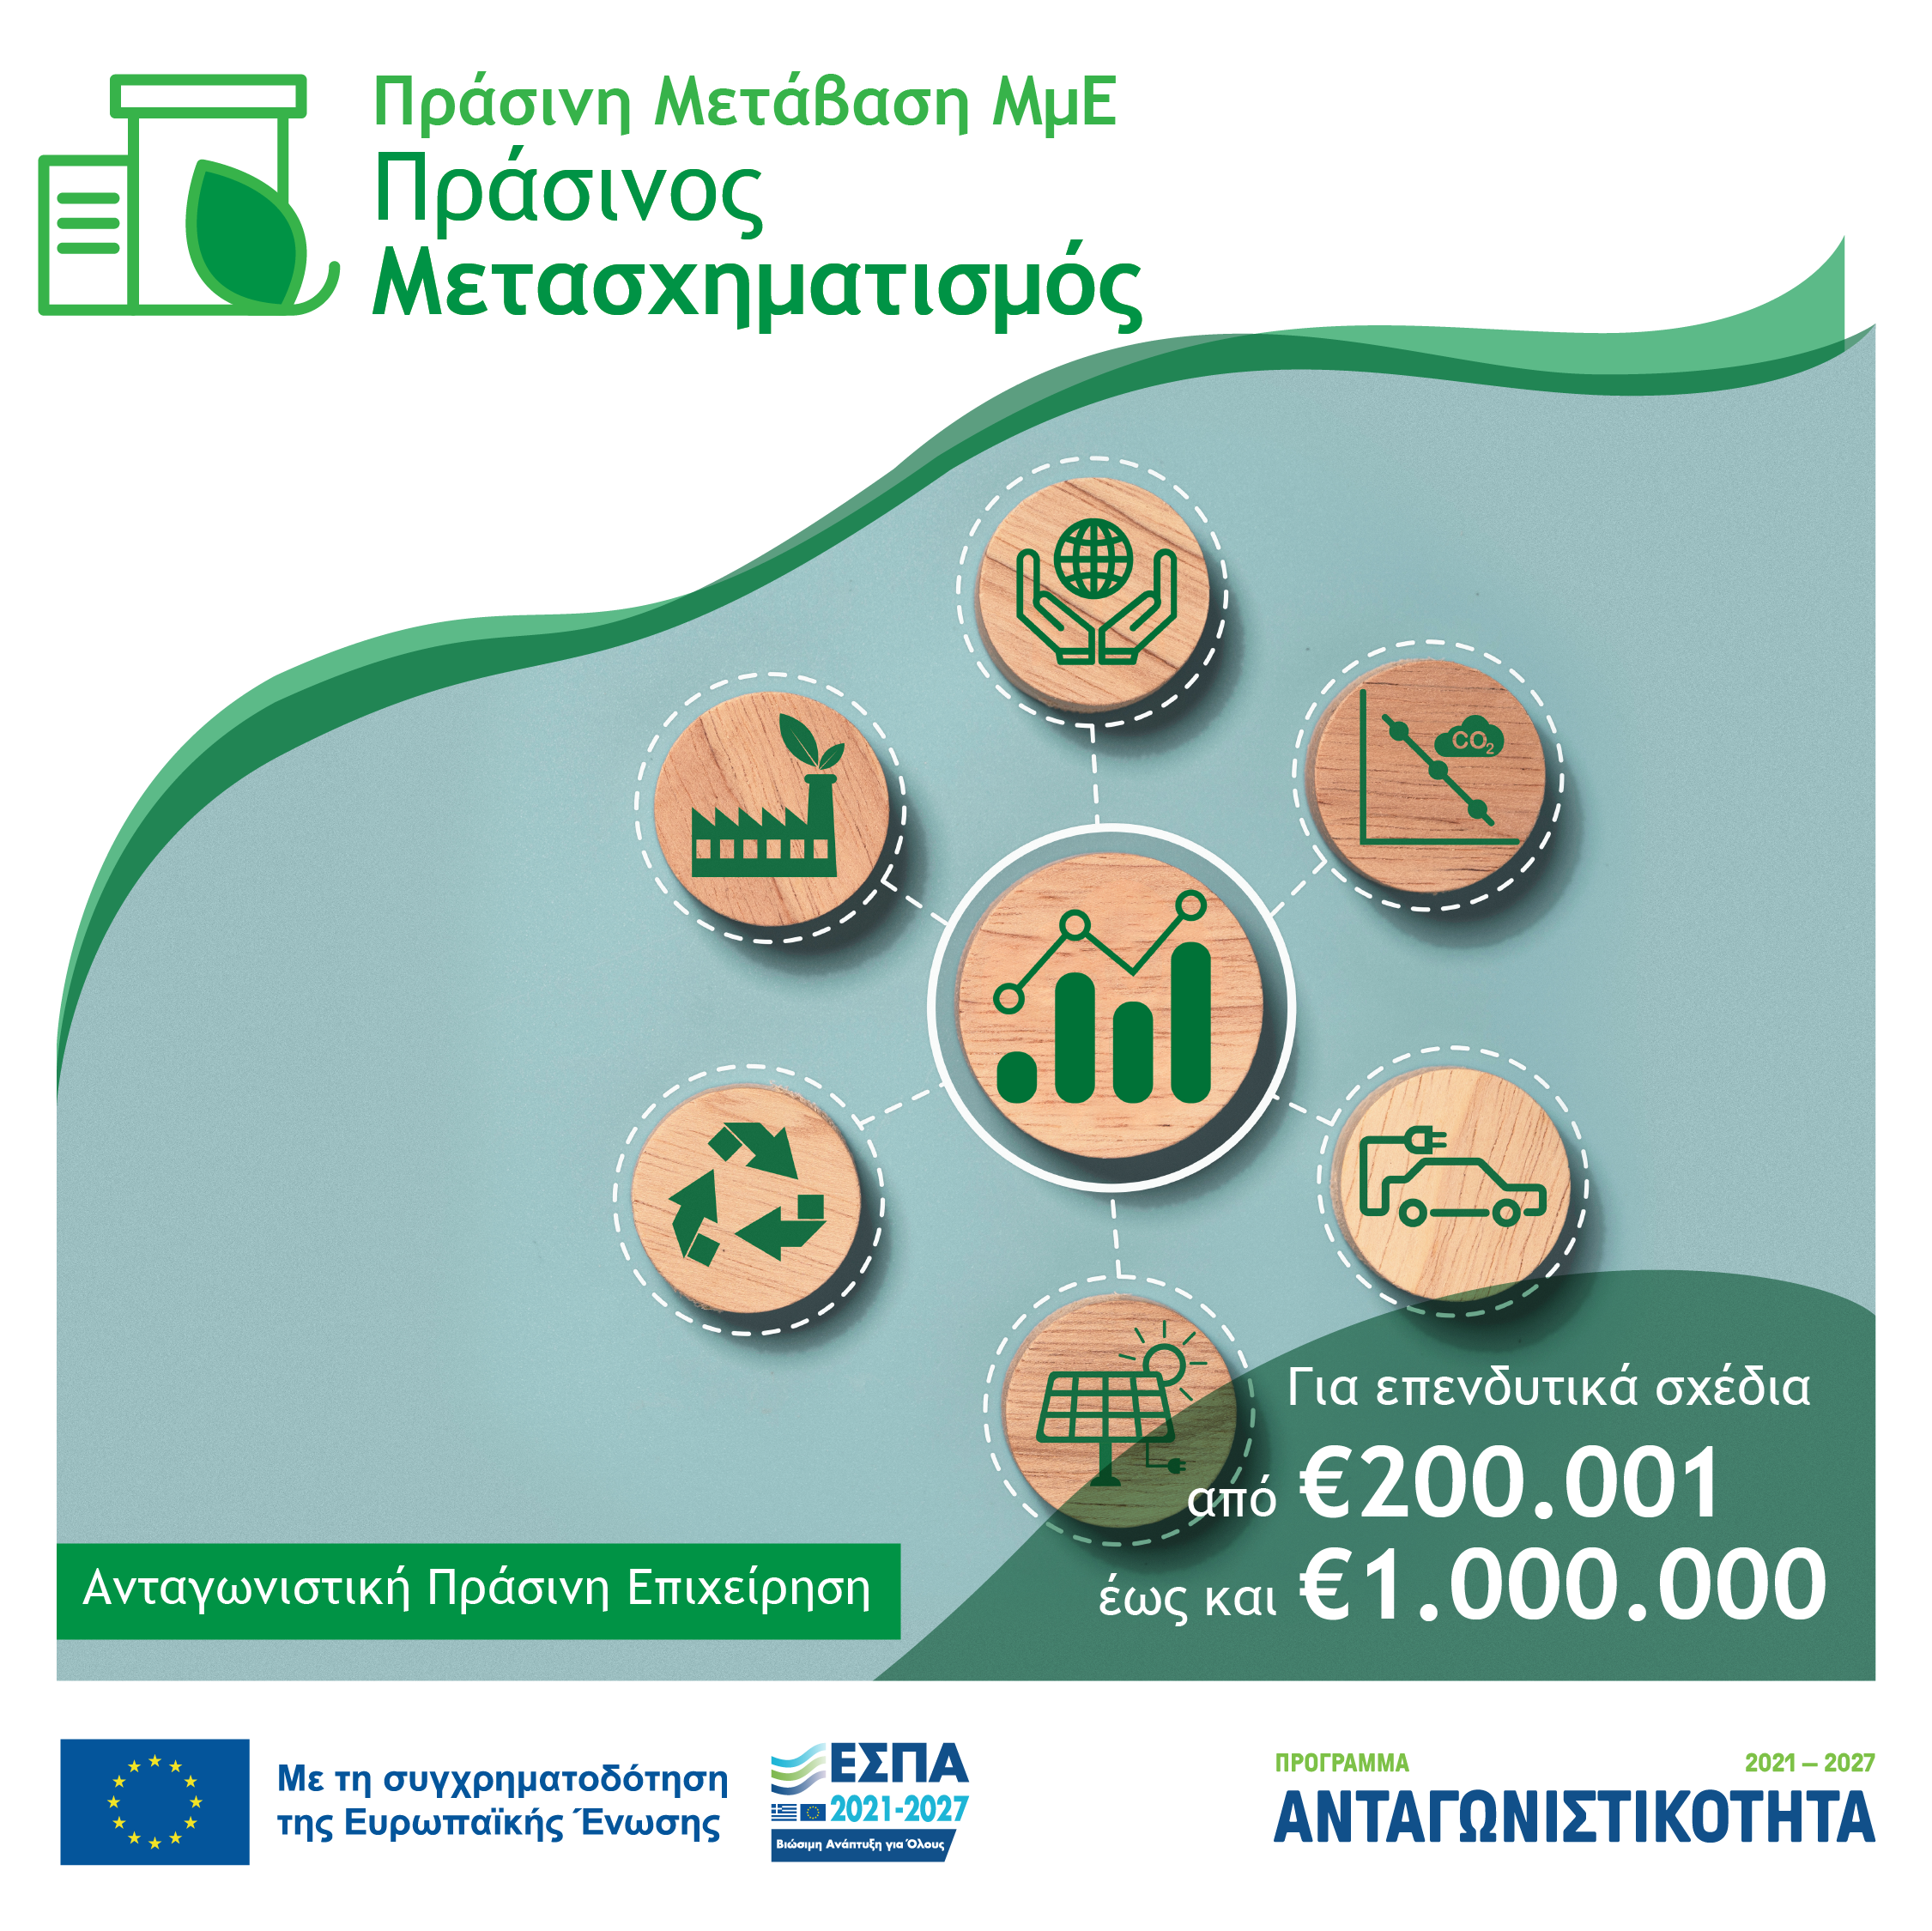 Υποδείγματα Υπεύθυνων Δηλώσεων για την υποβολή αιτήσεων χρηματοδότησης στη Δέσμη Δράσεων «Πράσινη Μετάβαση ΜμΕ»